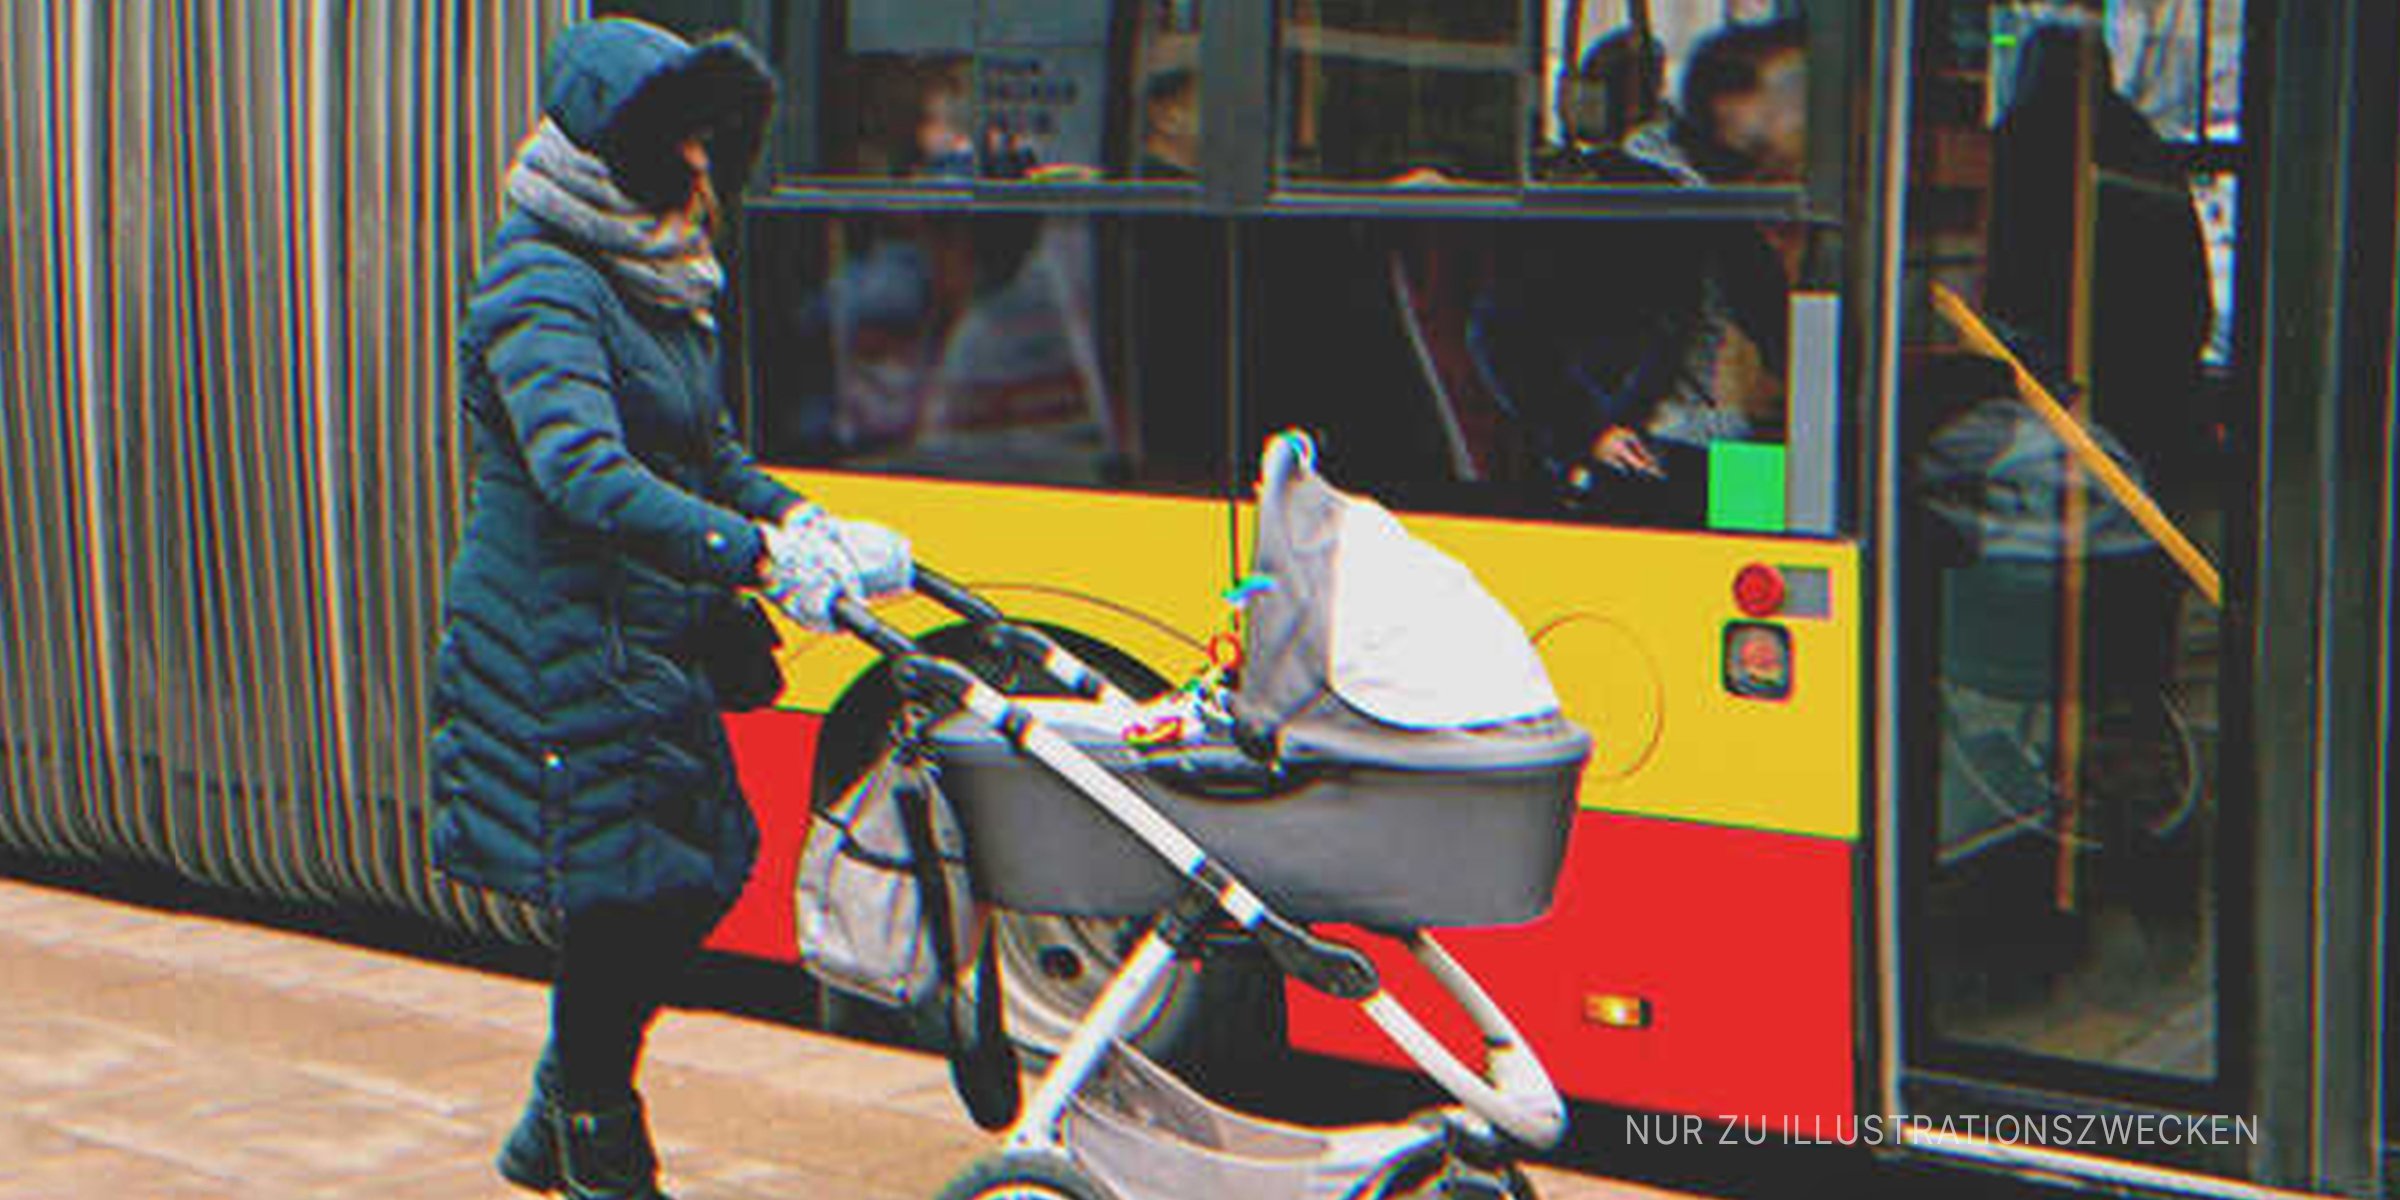 Frau mit Kinderwagen wartet darauf, in öffentliche Verkehrsmittel einzusteigen | Quelle: Shutterstock